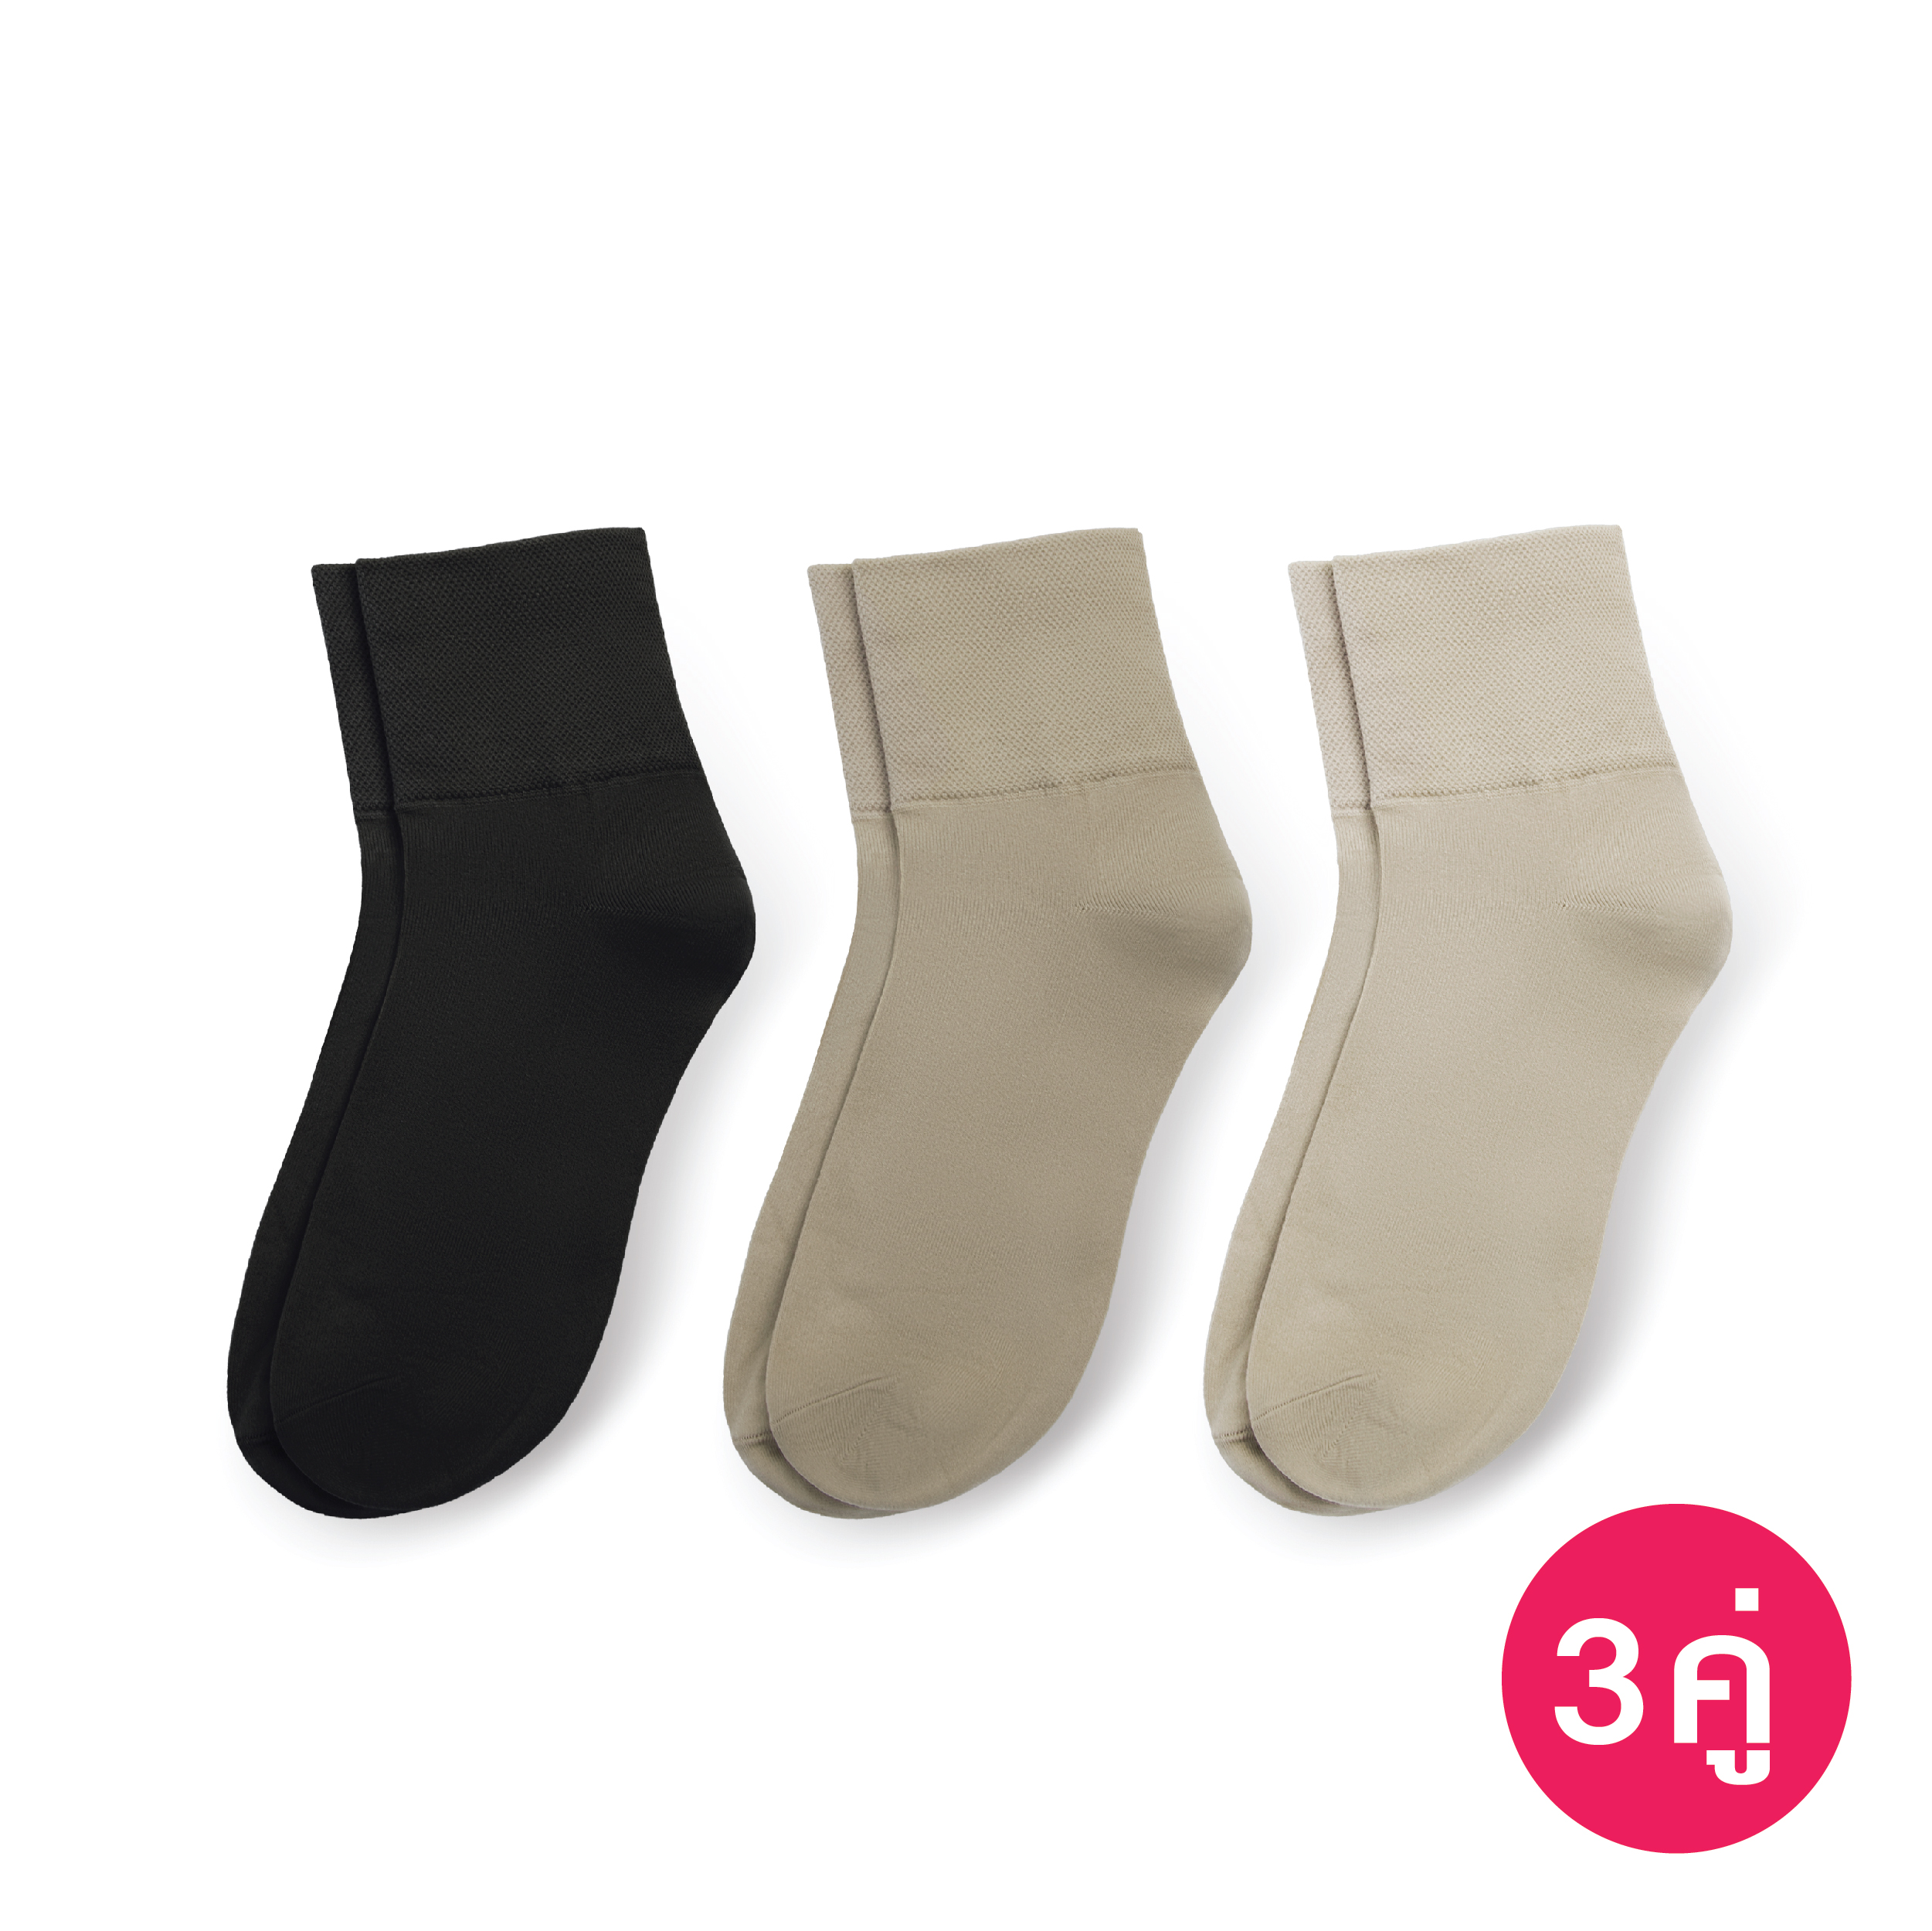 [ซื้อ Set คุ้มกว่า] ถุงเท้าทอขอบหนา สีดำ, สีเนื้อเข้ม, สีเนื้อ รหัส NESOAH